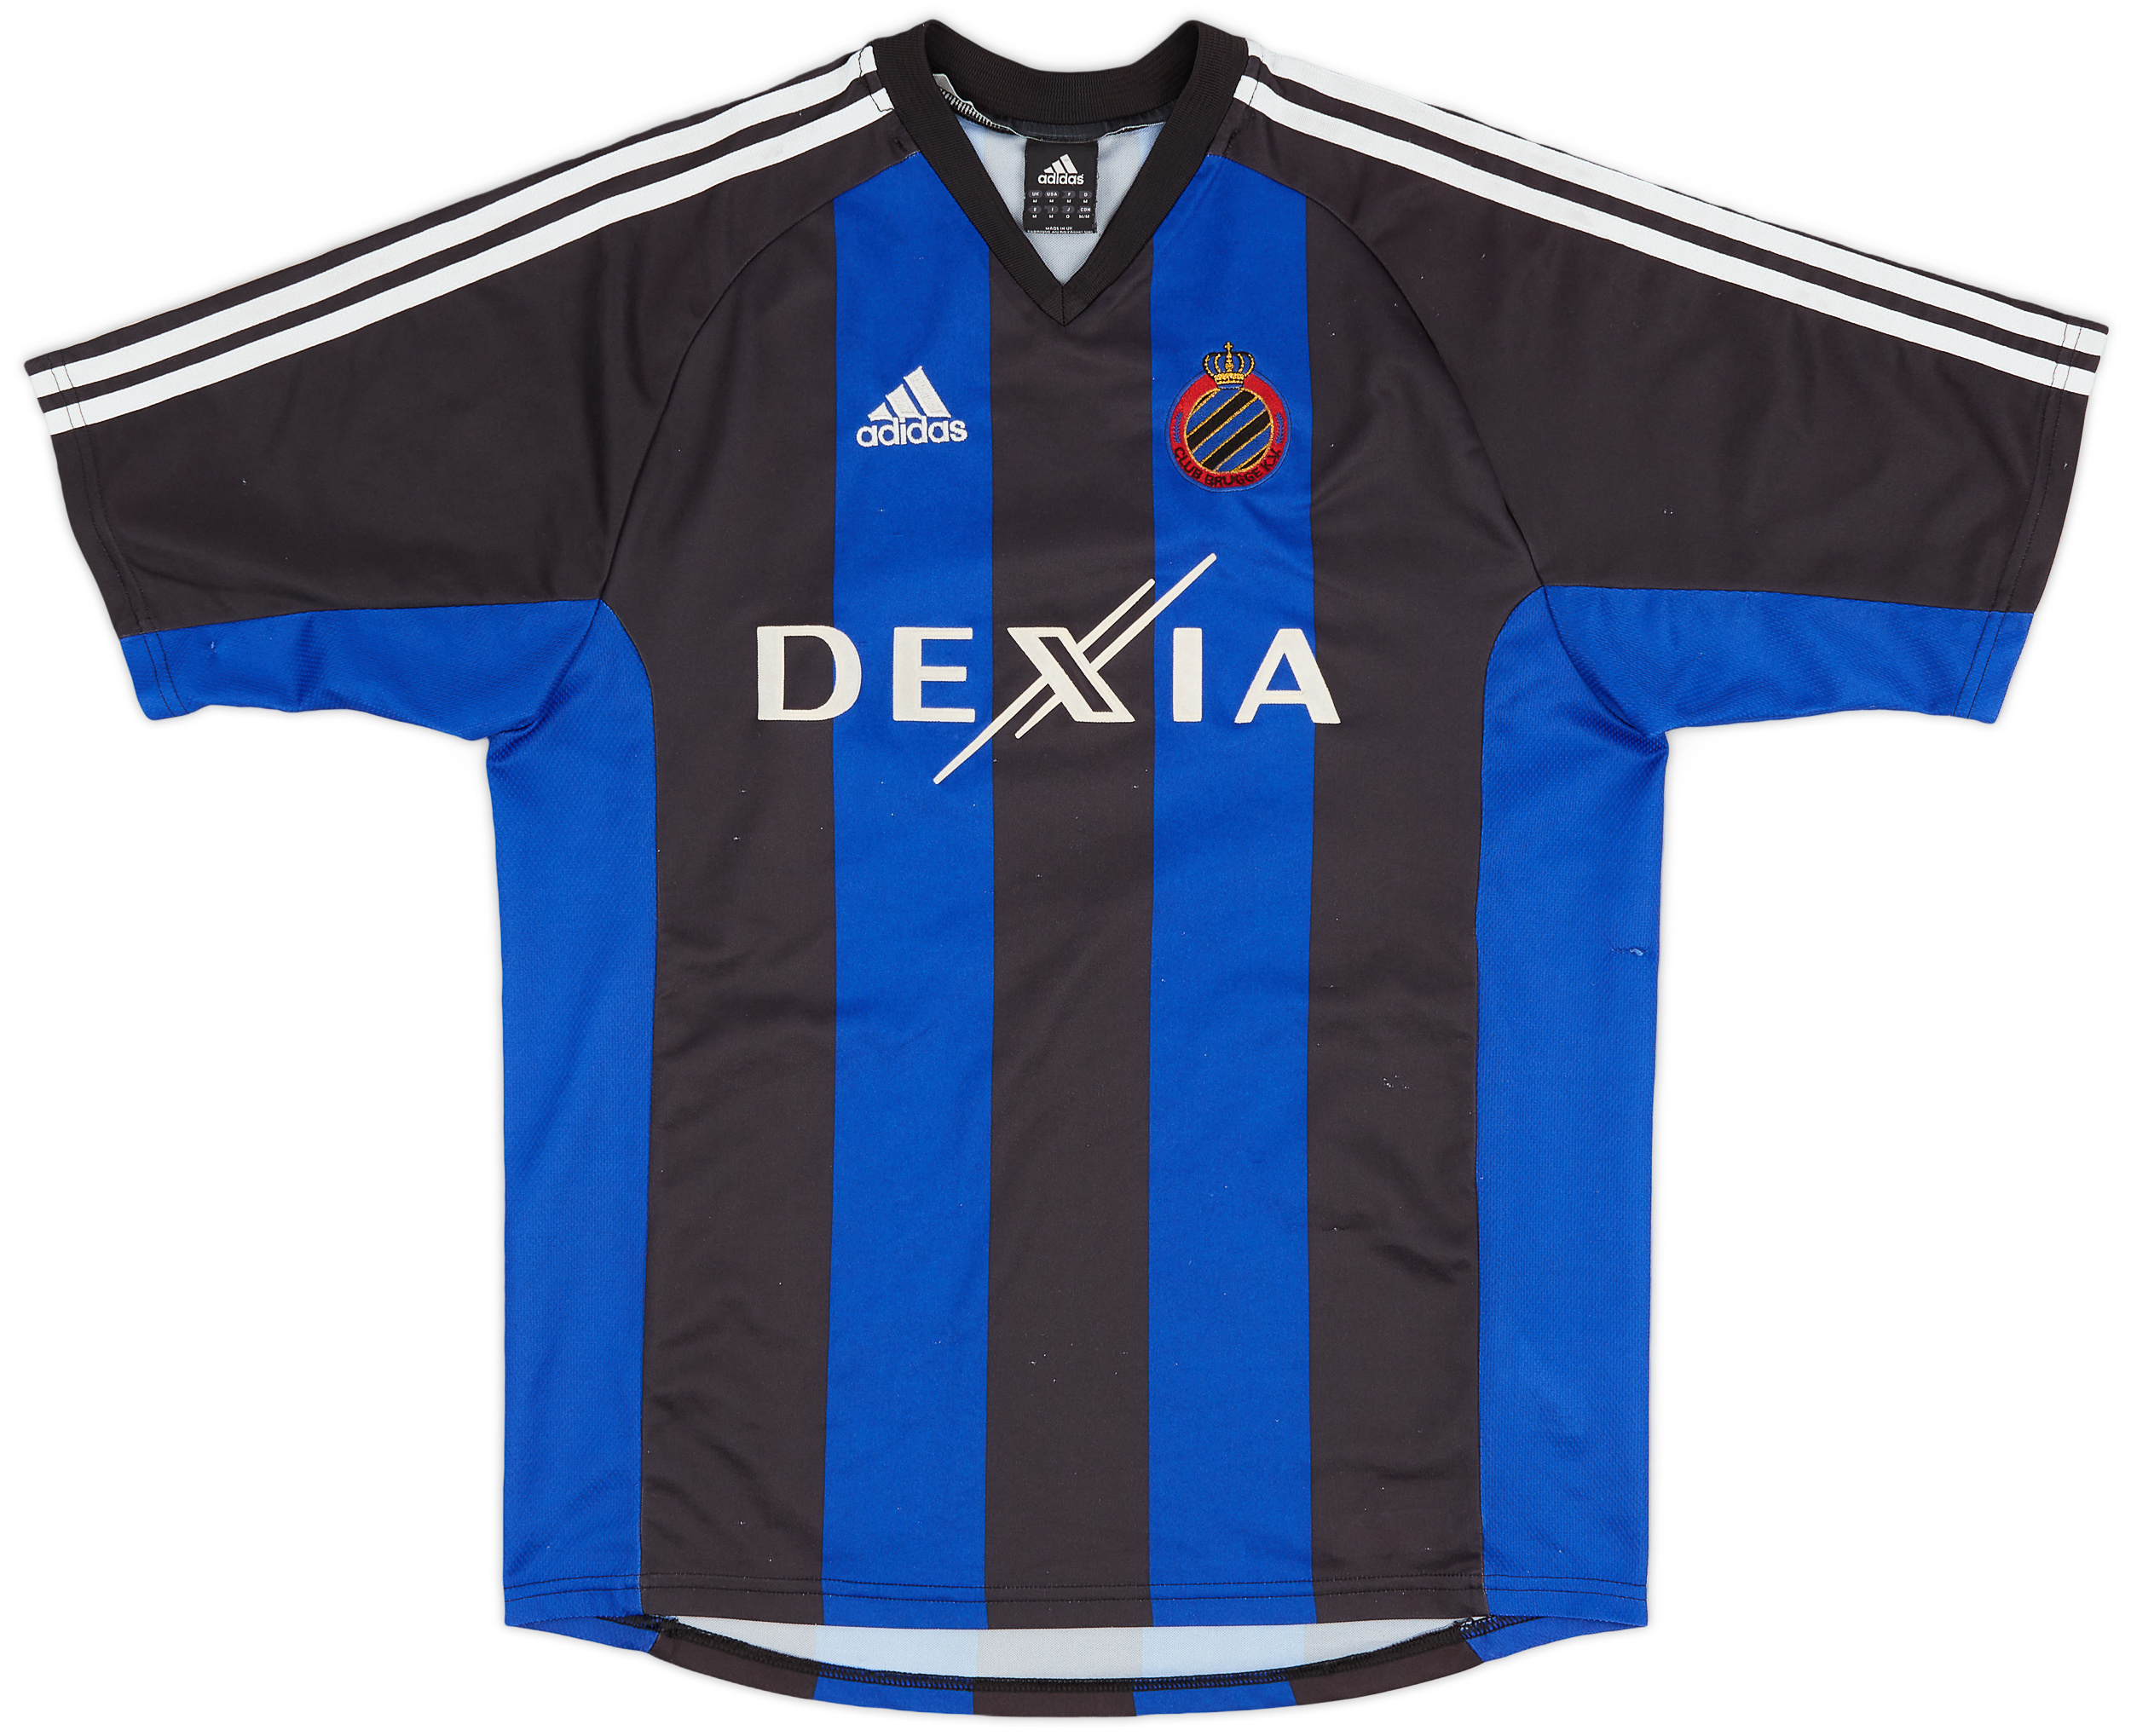 Club Brugge  home футболка (Original)